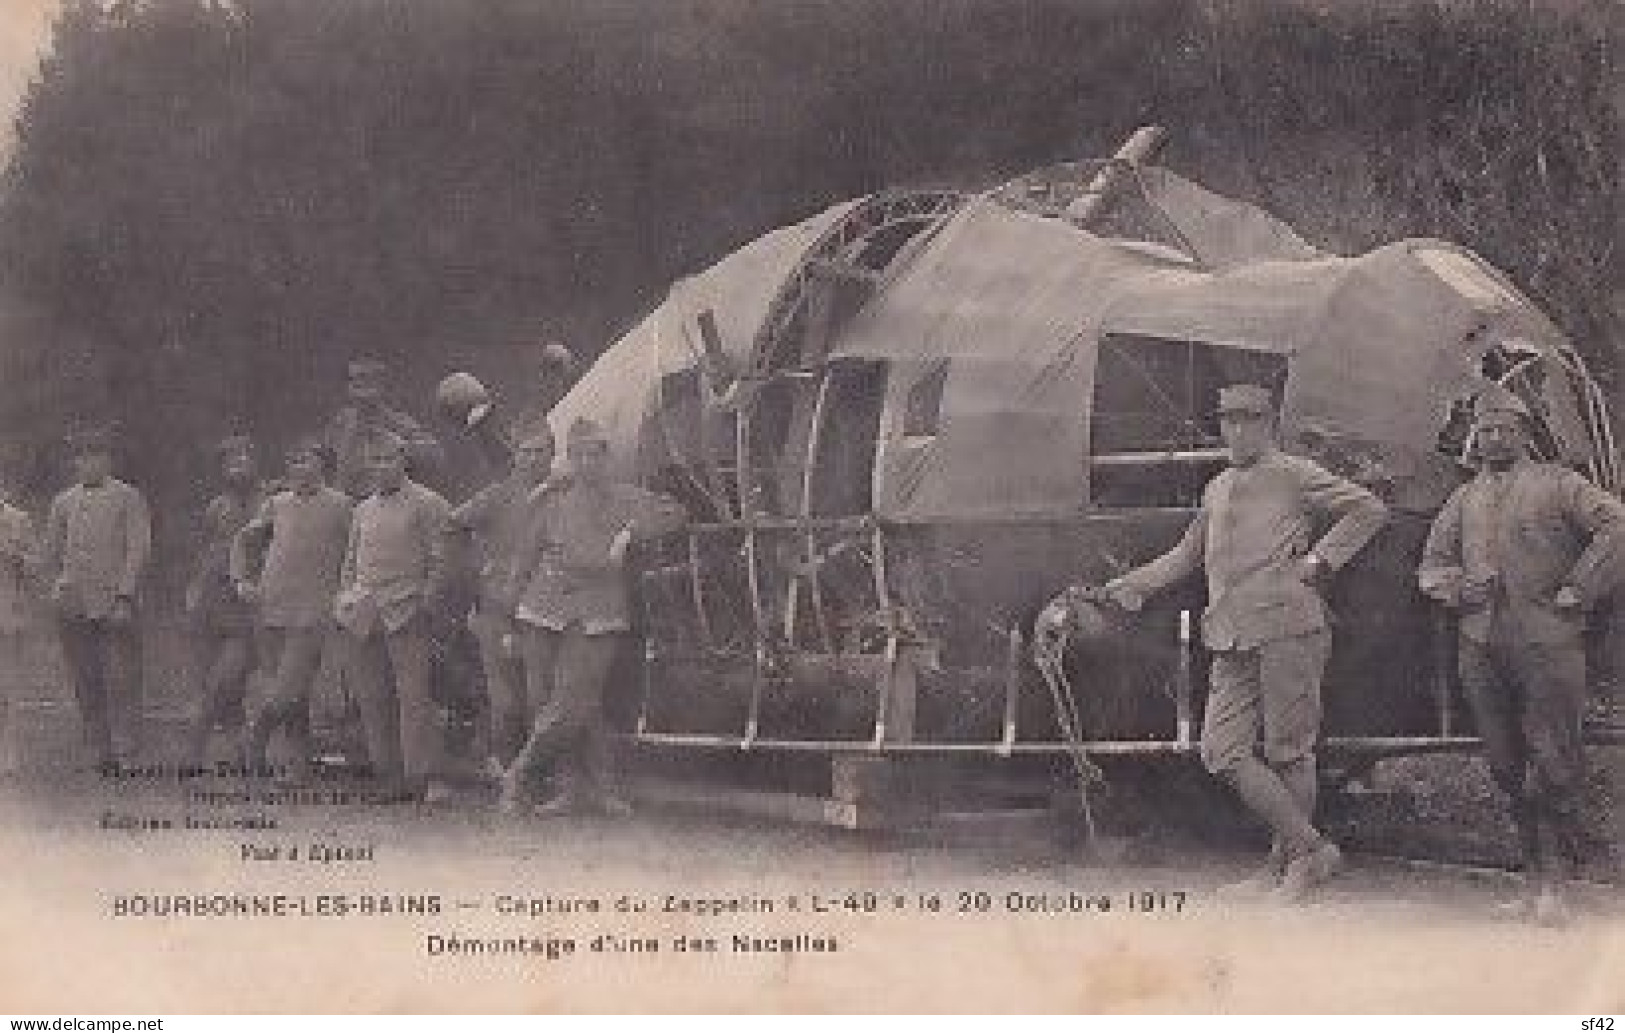 BOURBONNE LES BAINS         CAPTURE DU ZEPPELIN  L 49  LE 20 10 1917    DEMONTAGE D UNE NACELLE - Guerra 1914-18